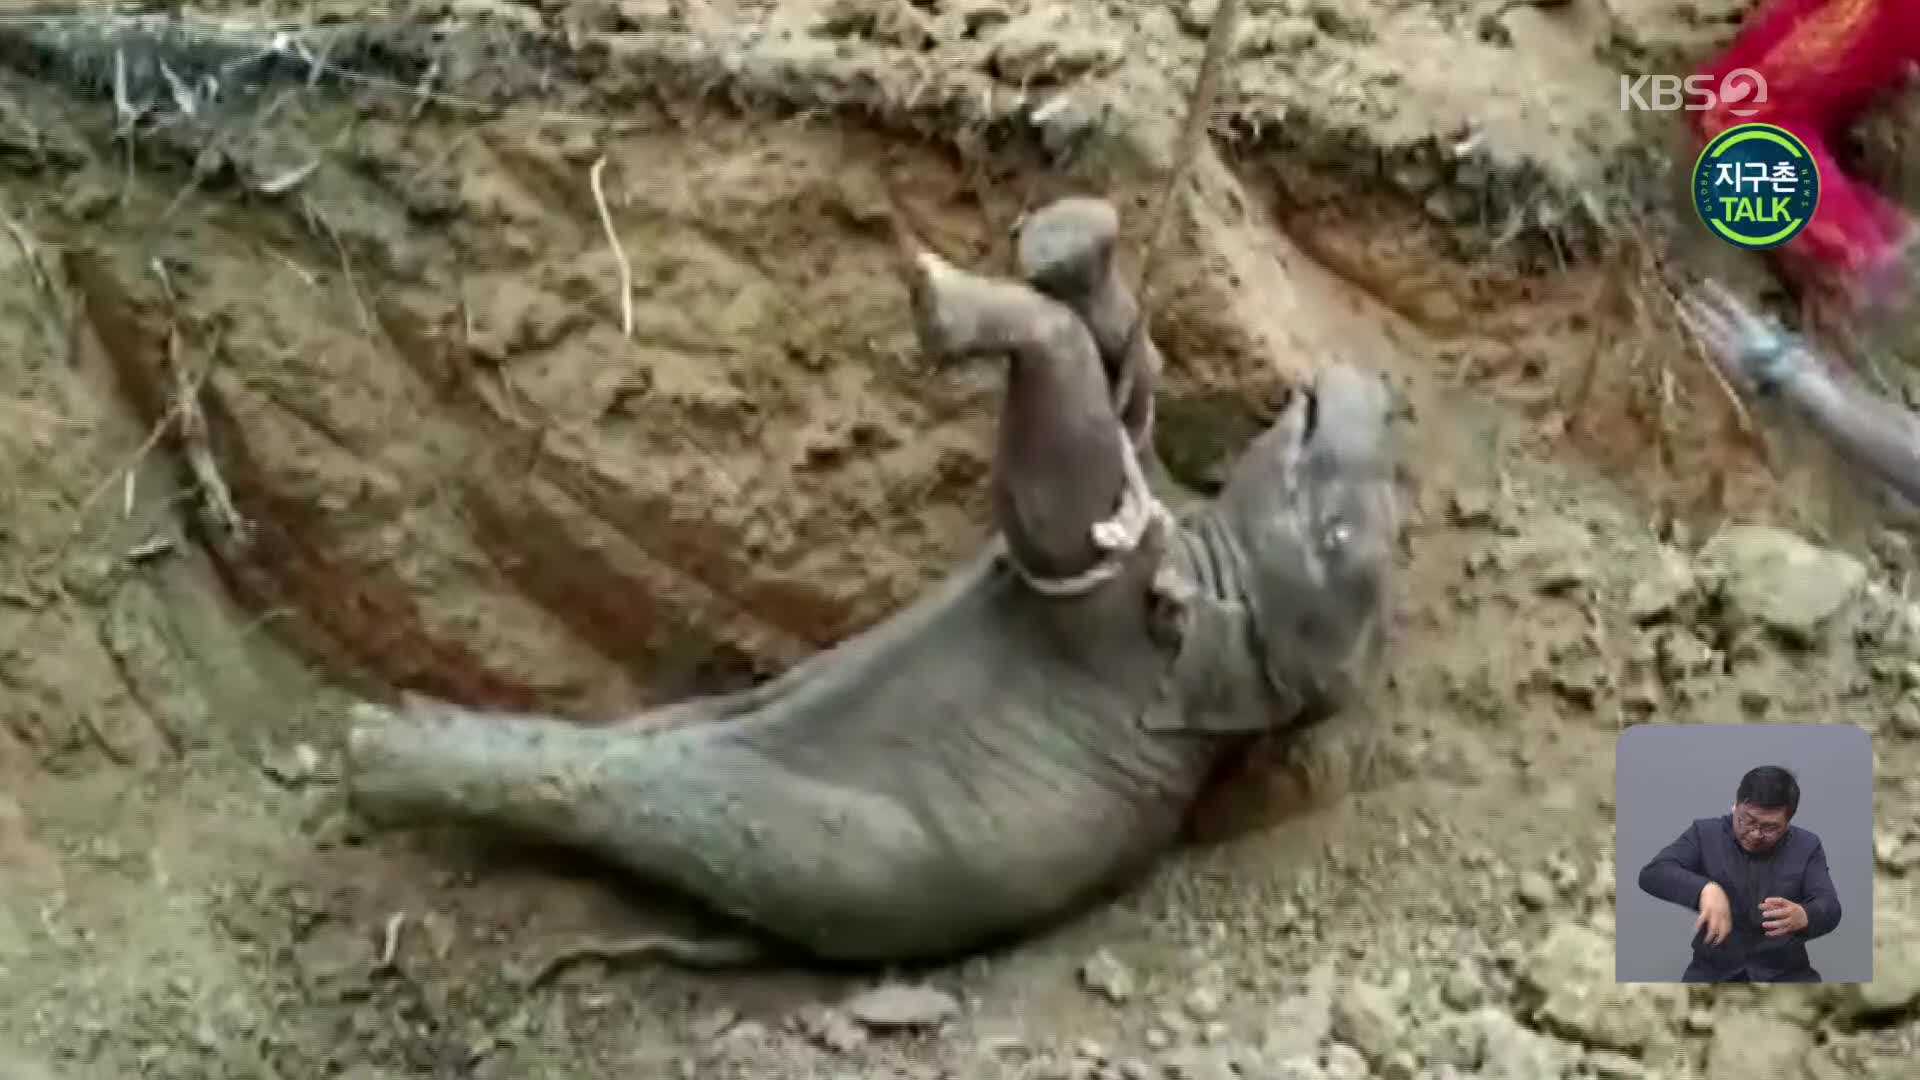 [지구촌 Talk] 구덩이에 빠진 새끼 코끼리 구조